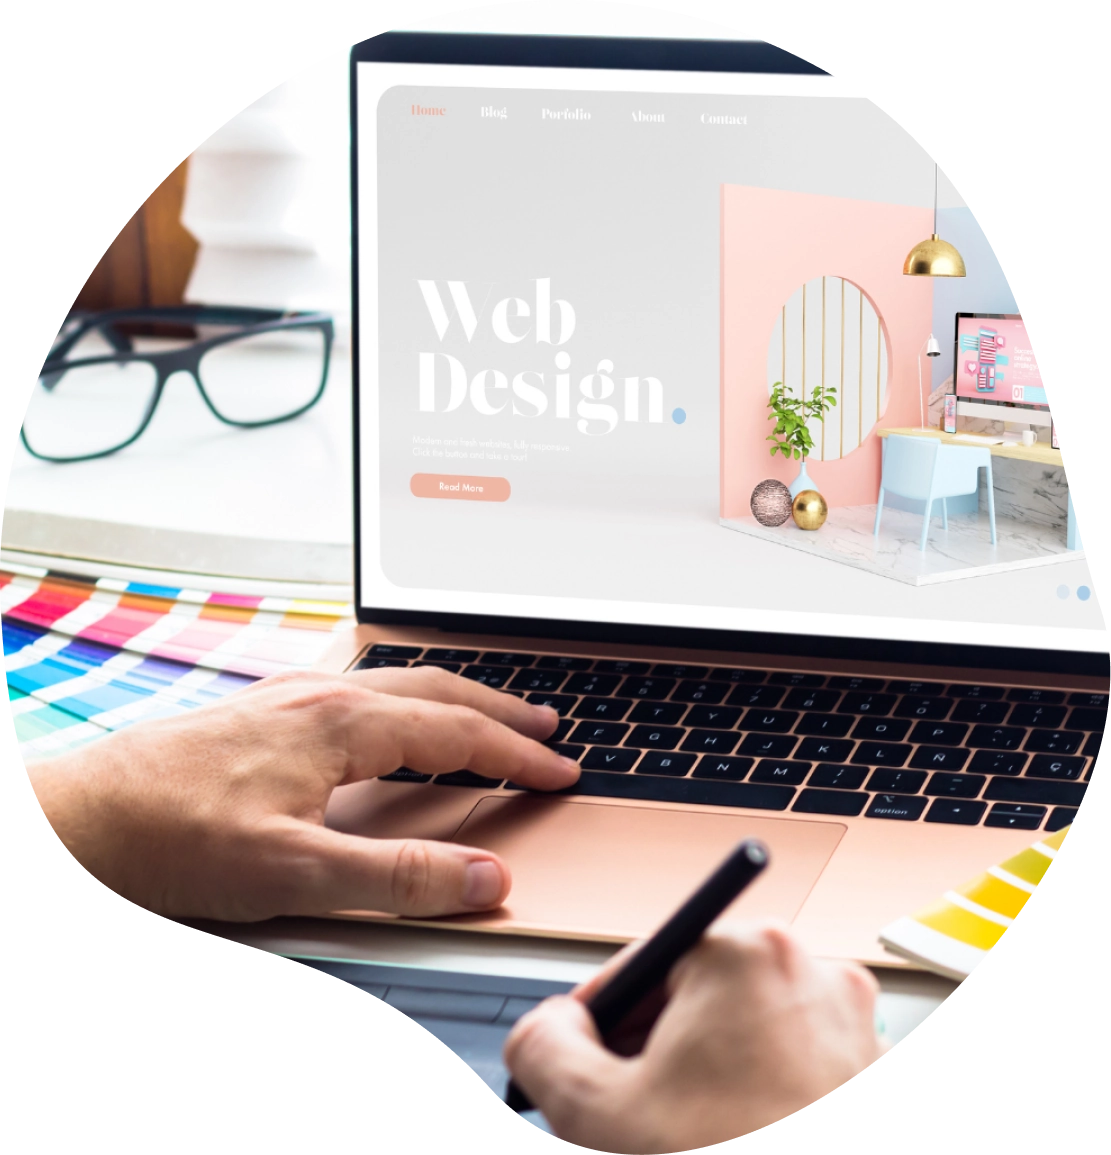 Web Design Élégant: Astuces d'une Agence Web Design